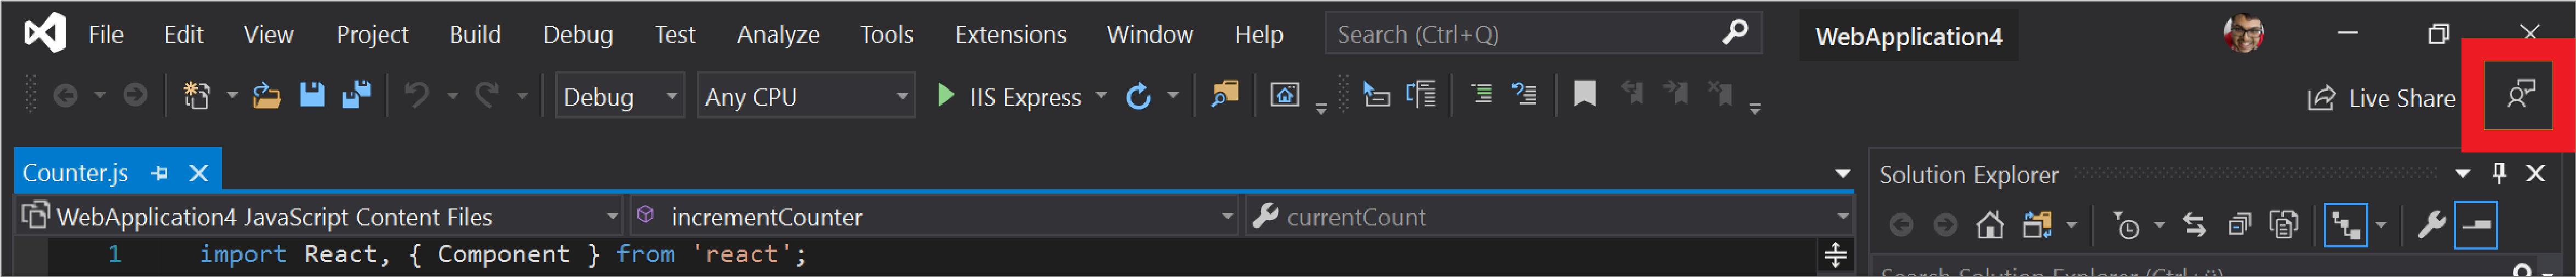 The Send Feedback icon in Visual Studio.